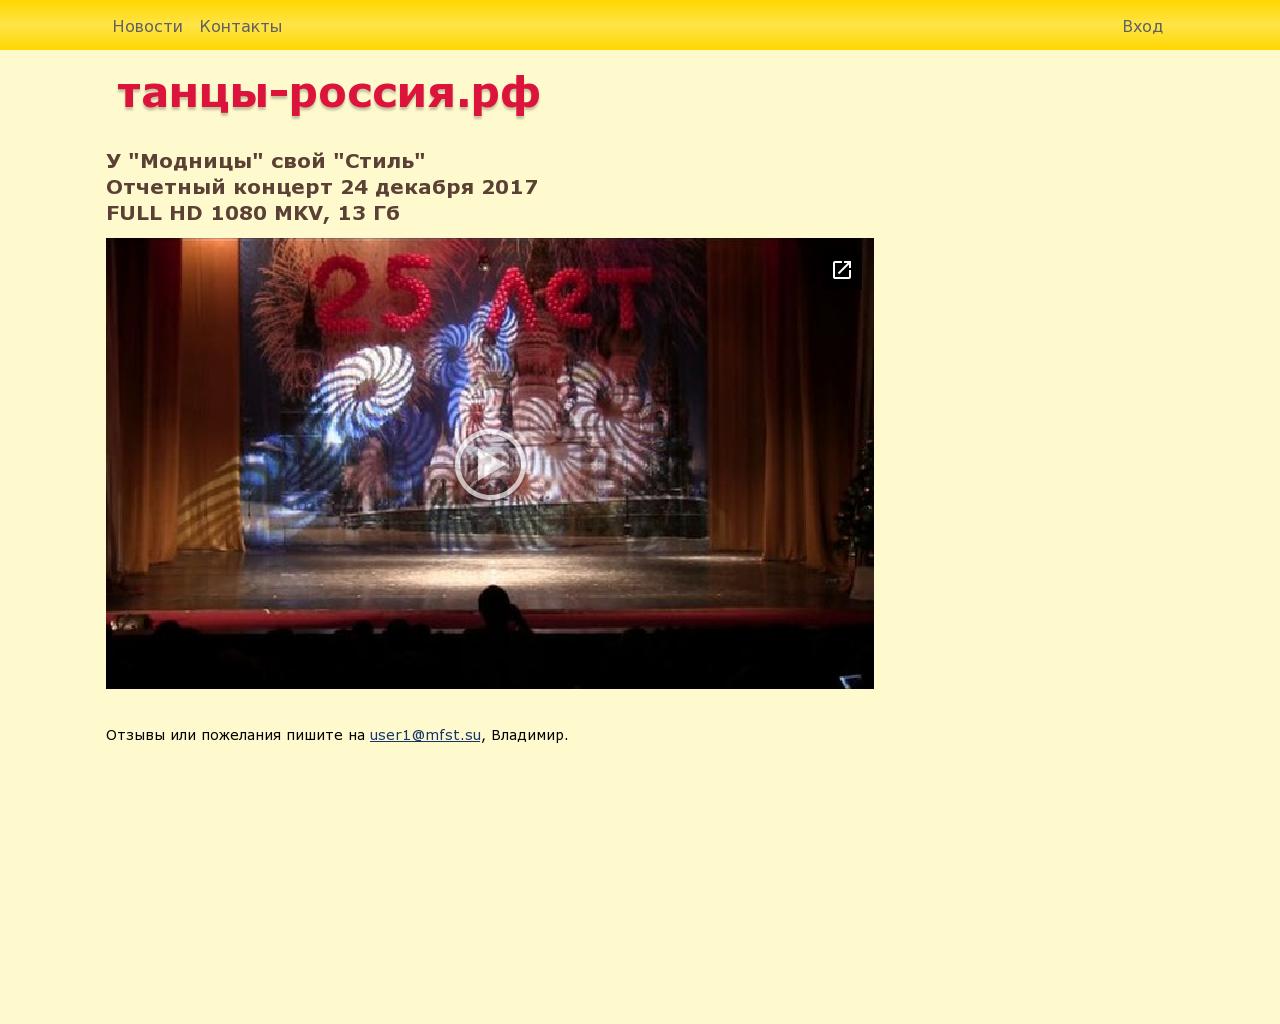 Изображение сайта танцы-россия.рф в разрешении 1280x1024